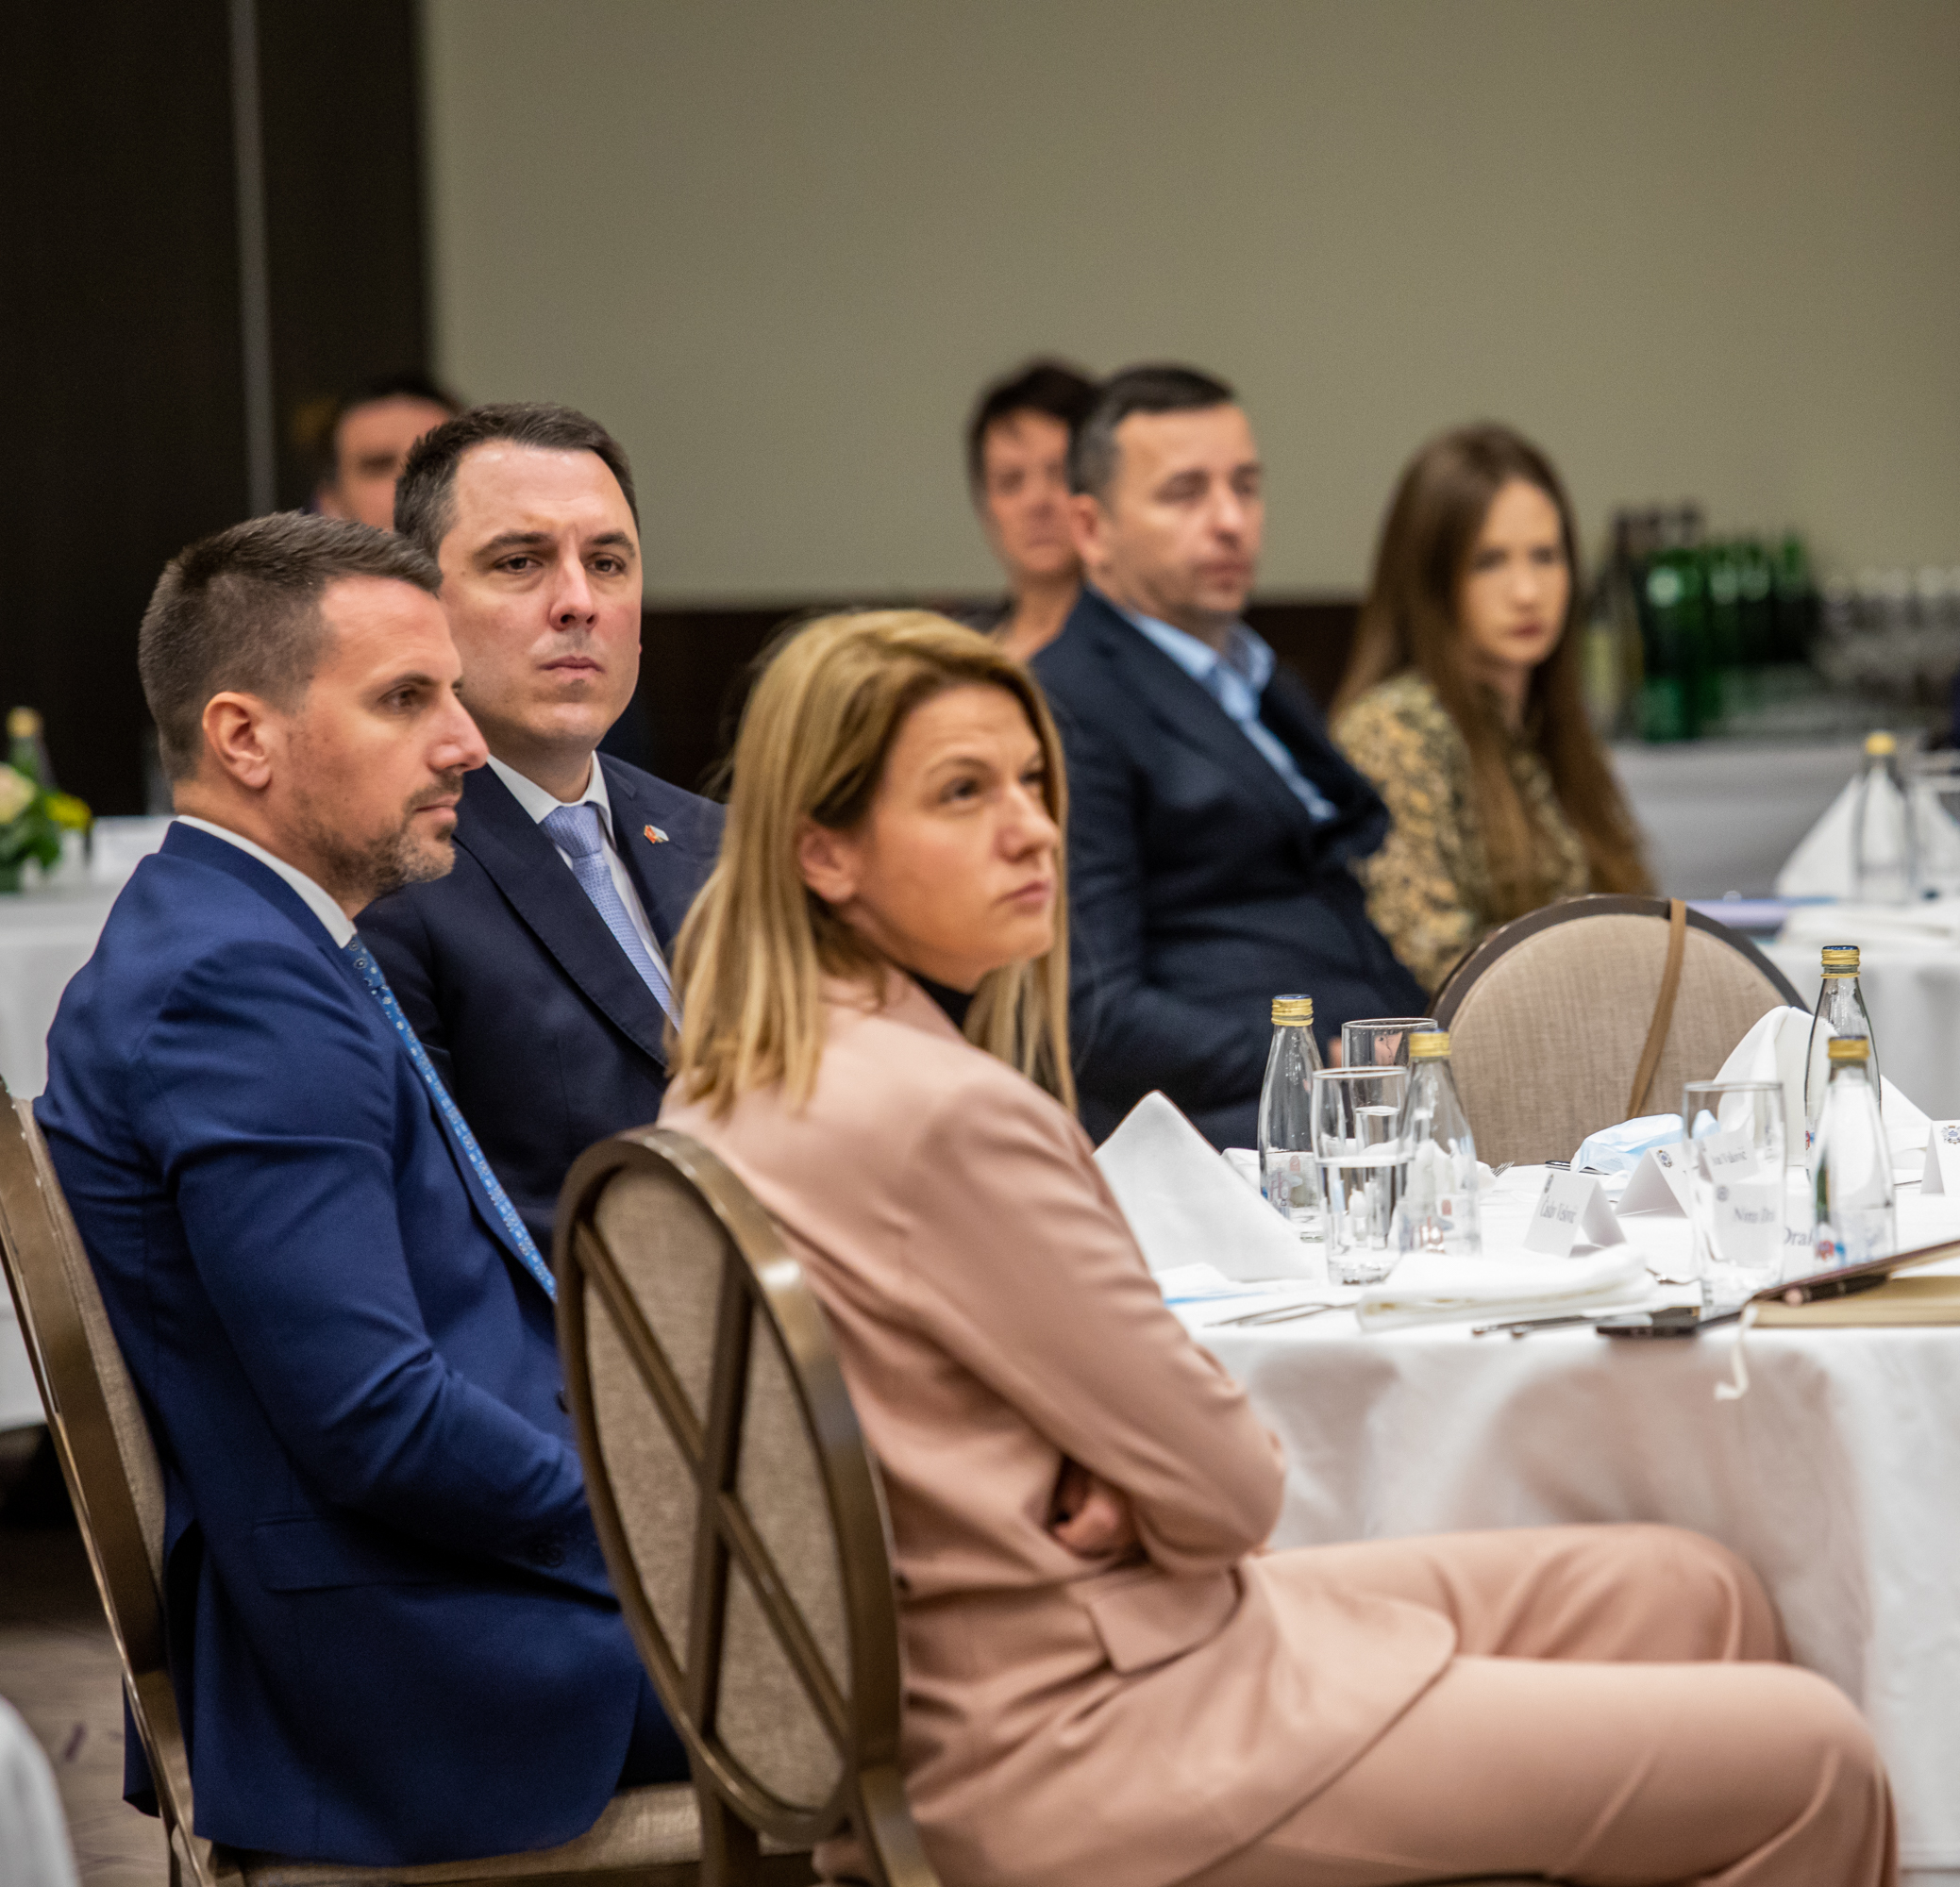 Održana  7. sjednica Savjeta za unapređenje poslovnog ambijenta u Podgorici